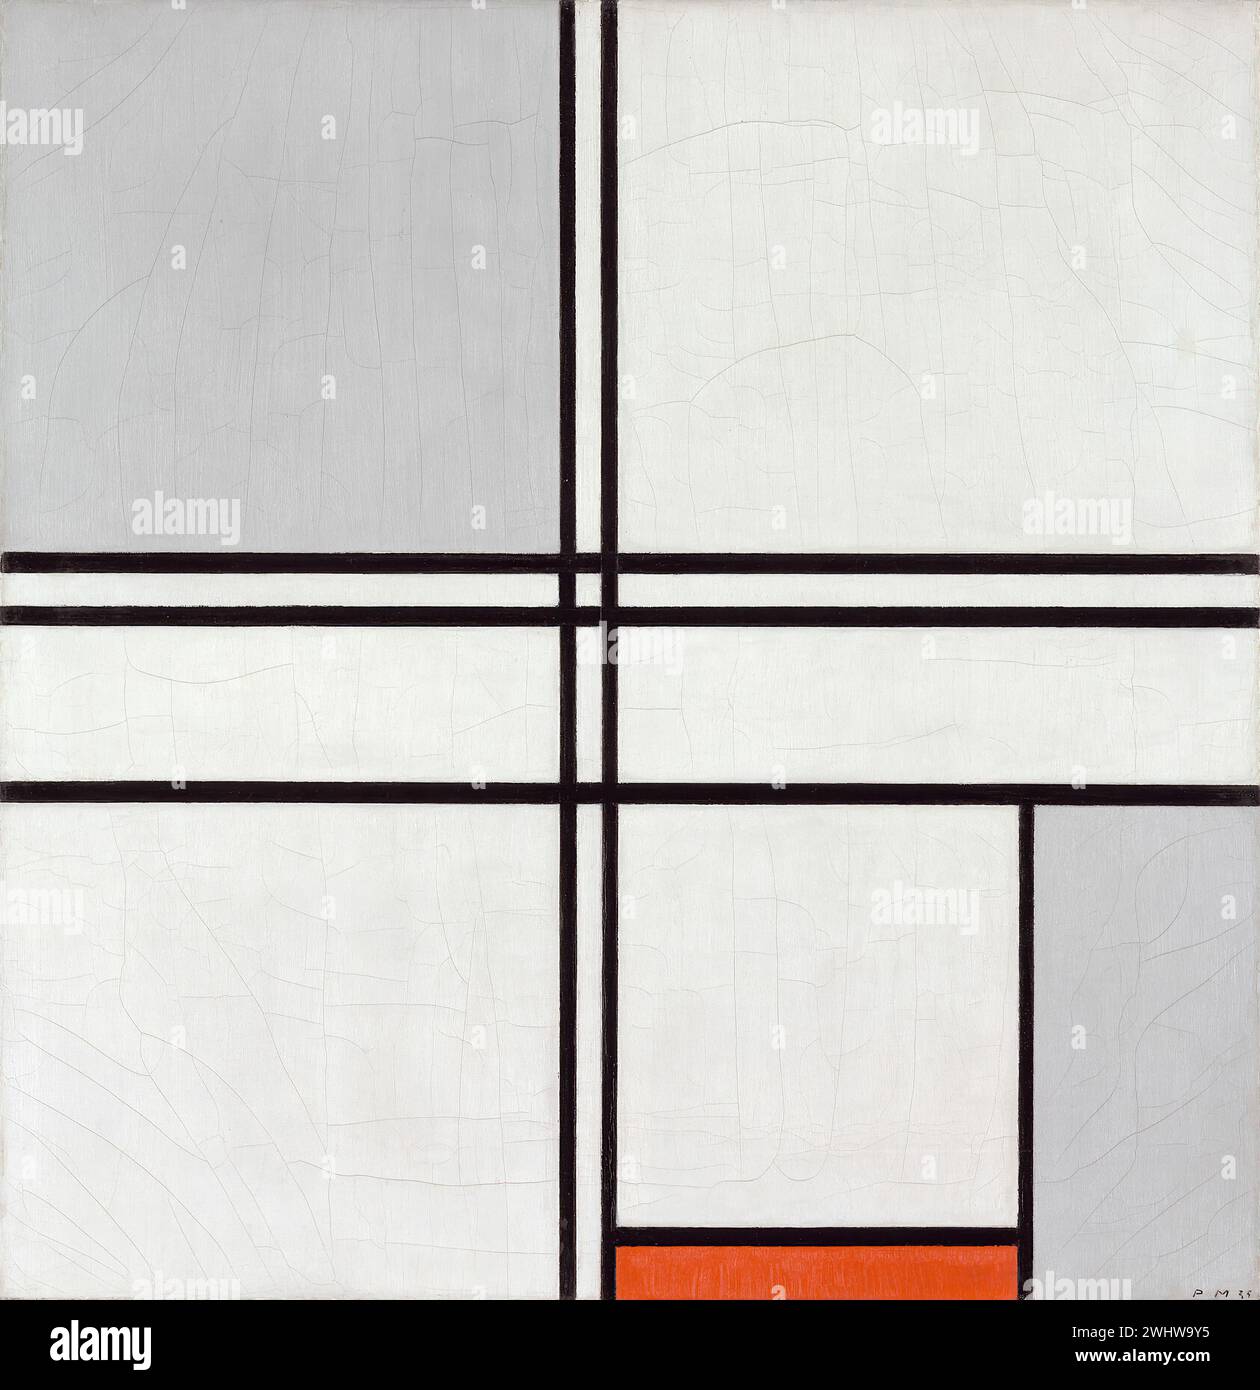 Piet Mondrian - Composition n° 1 gris-rouge Stock Photo